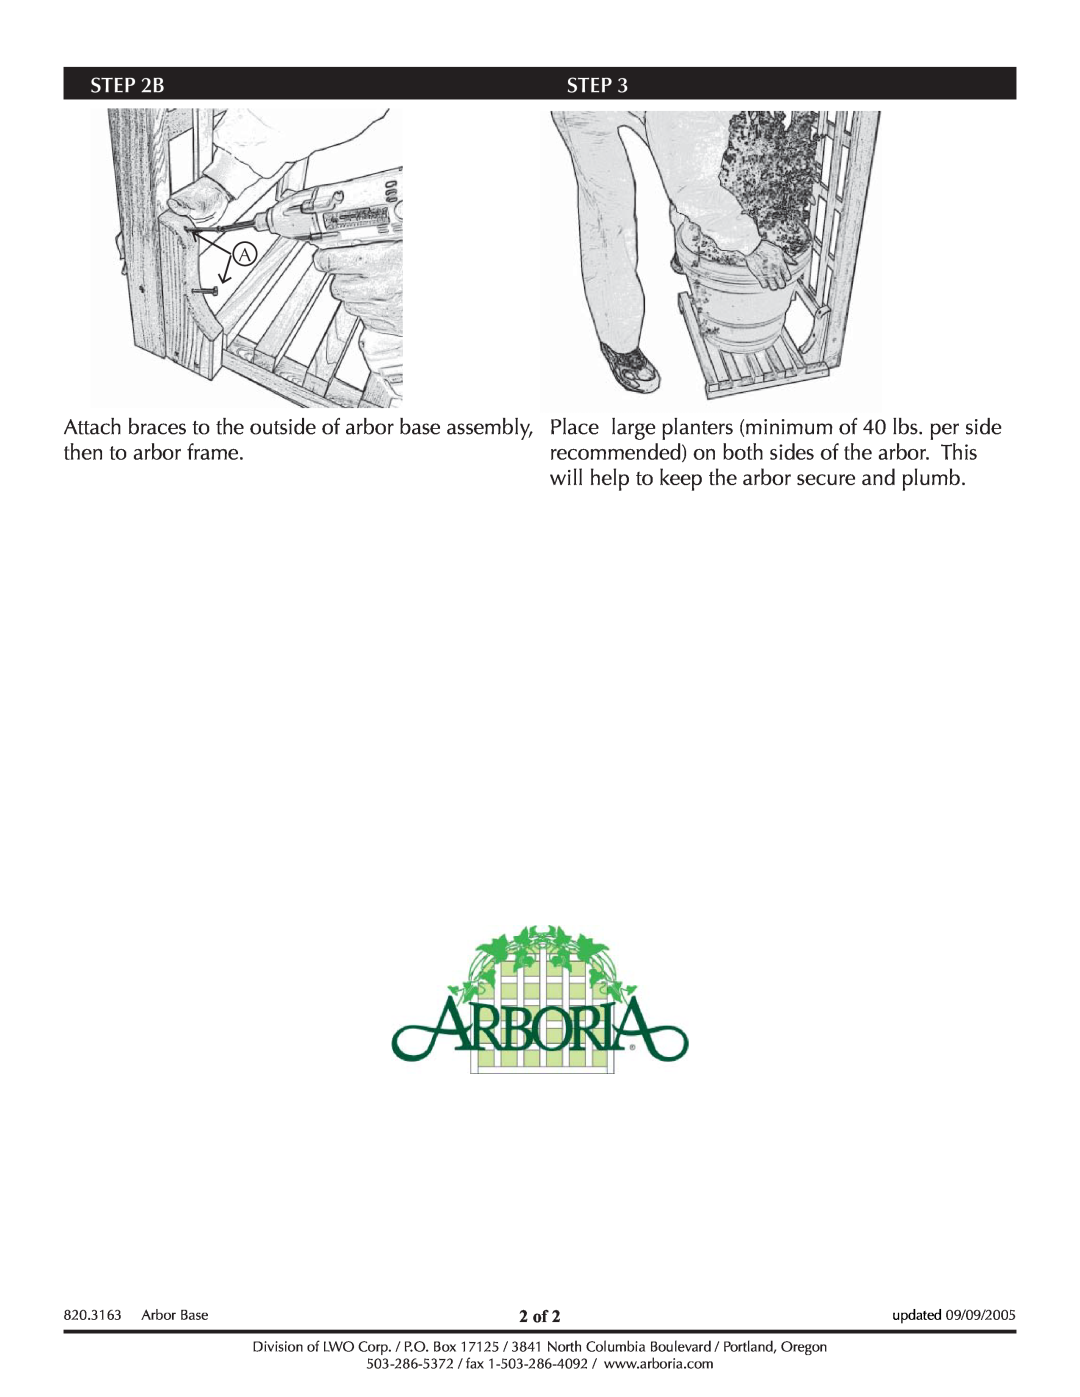 Arboria Arbor Base manual Step, 2 of 